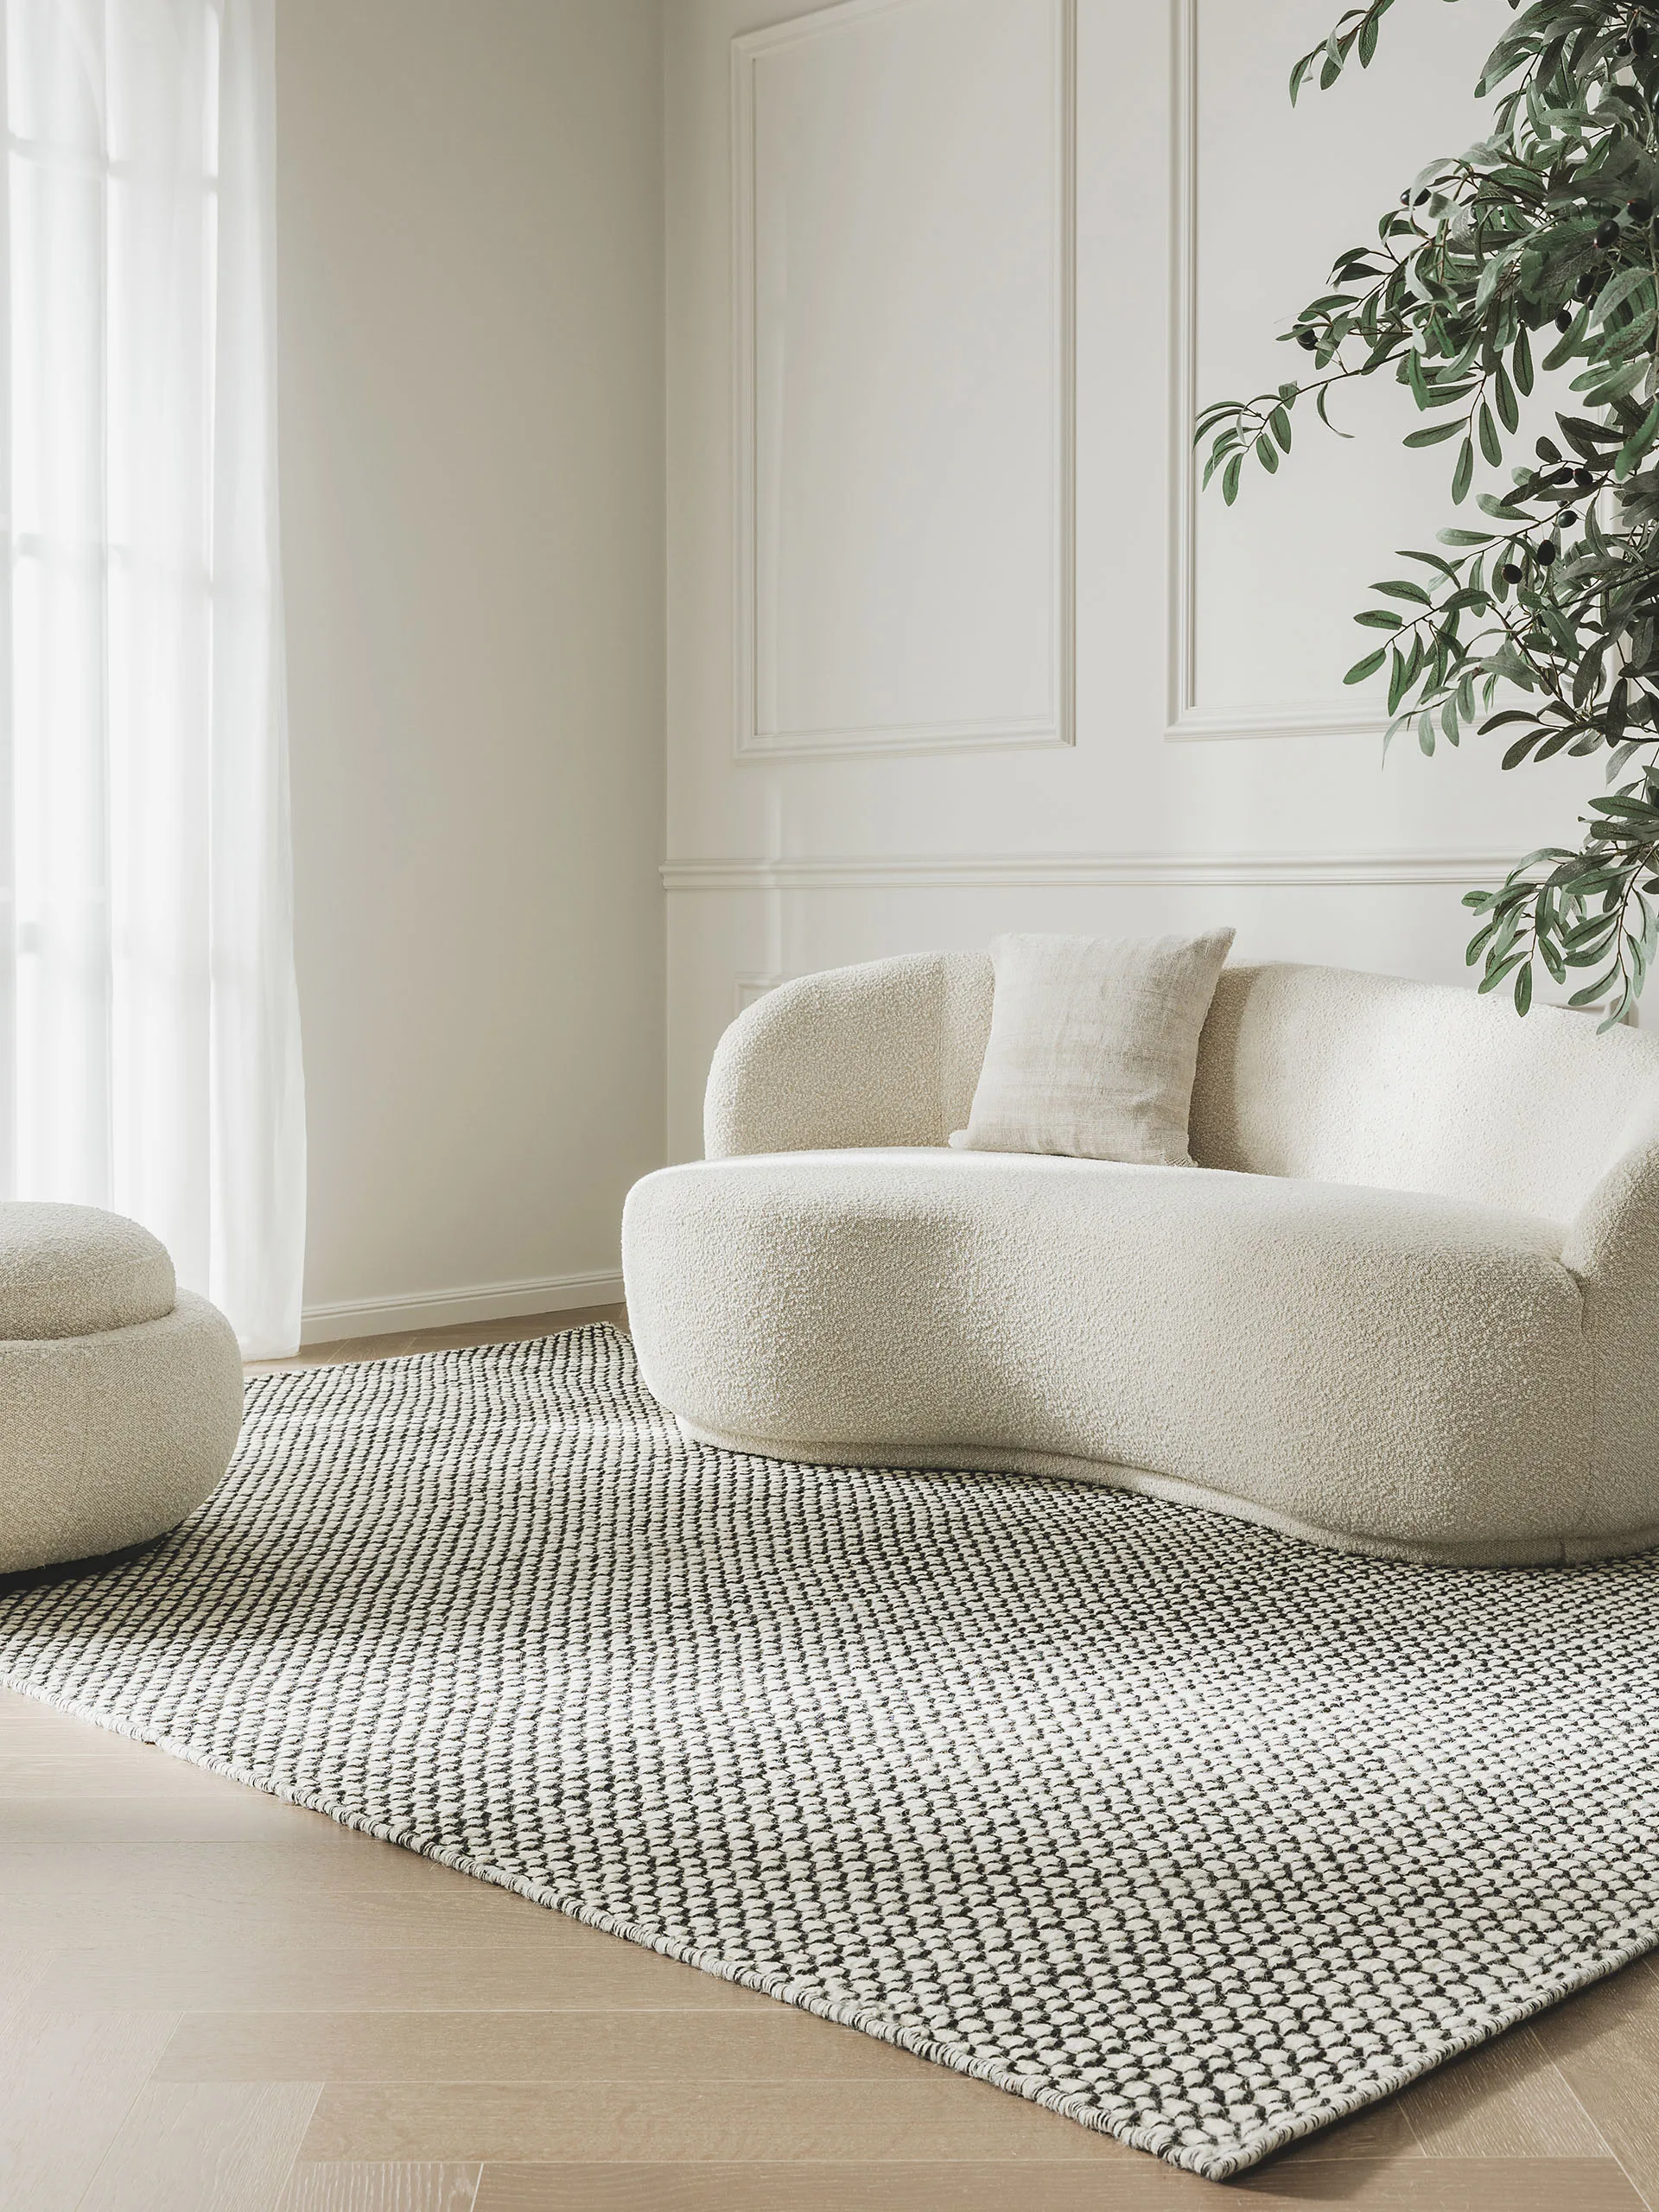 Schwarz-weißer Flachgewebe Teppich mit der perfekten Größe, um Sofa und Pouf in Beige auf ihn zu platzieren